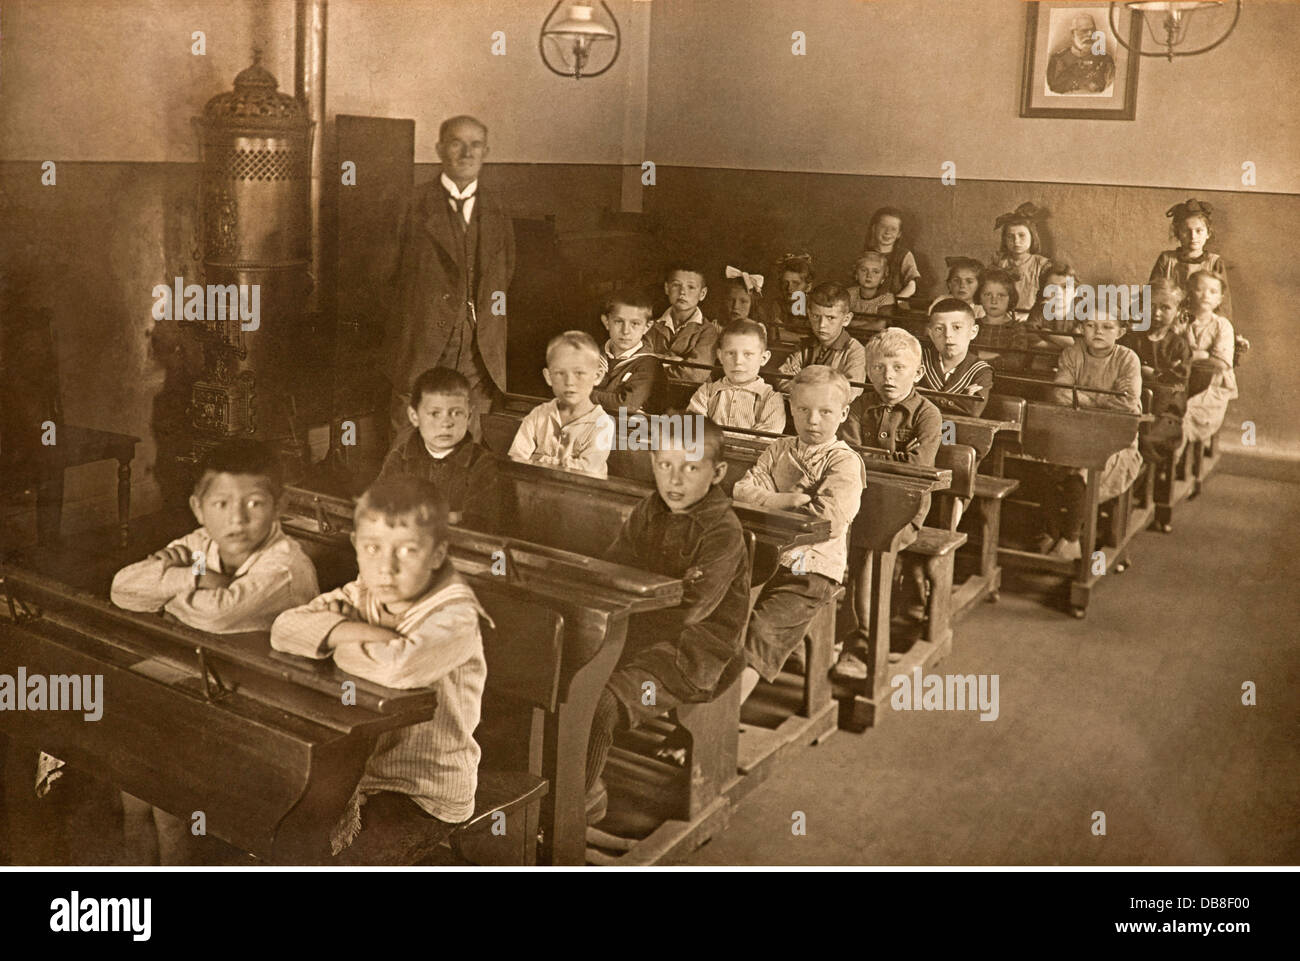 Pedagogía, escuela, clase, niños y niñas sentados separados, foto del último rey bávaro Ludwig II en el fondo, Kitzingen am Main, Baviera, Alemania, 1914, Derechos adicionales-Clearences-no disponible Foto de stock